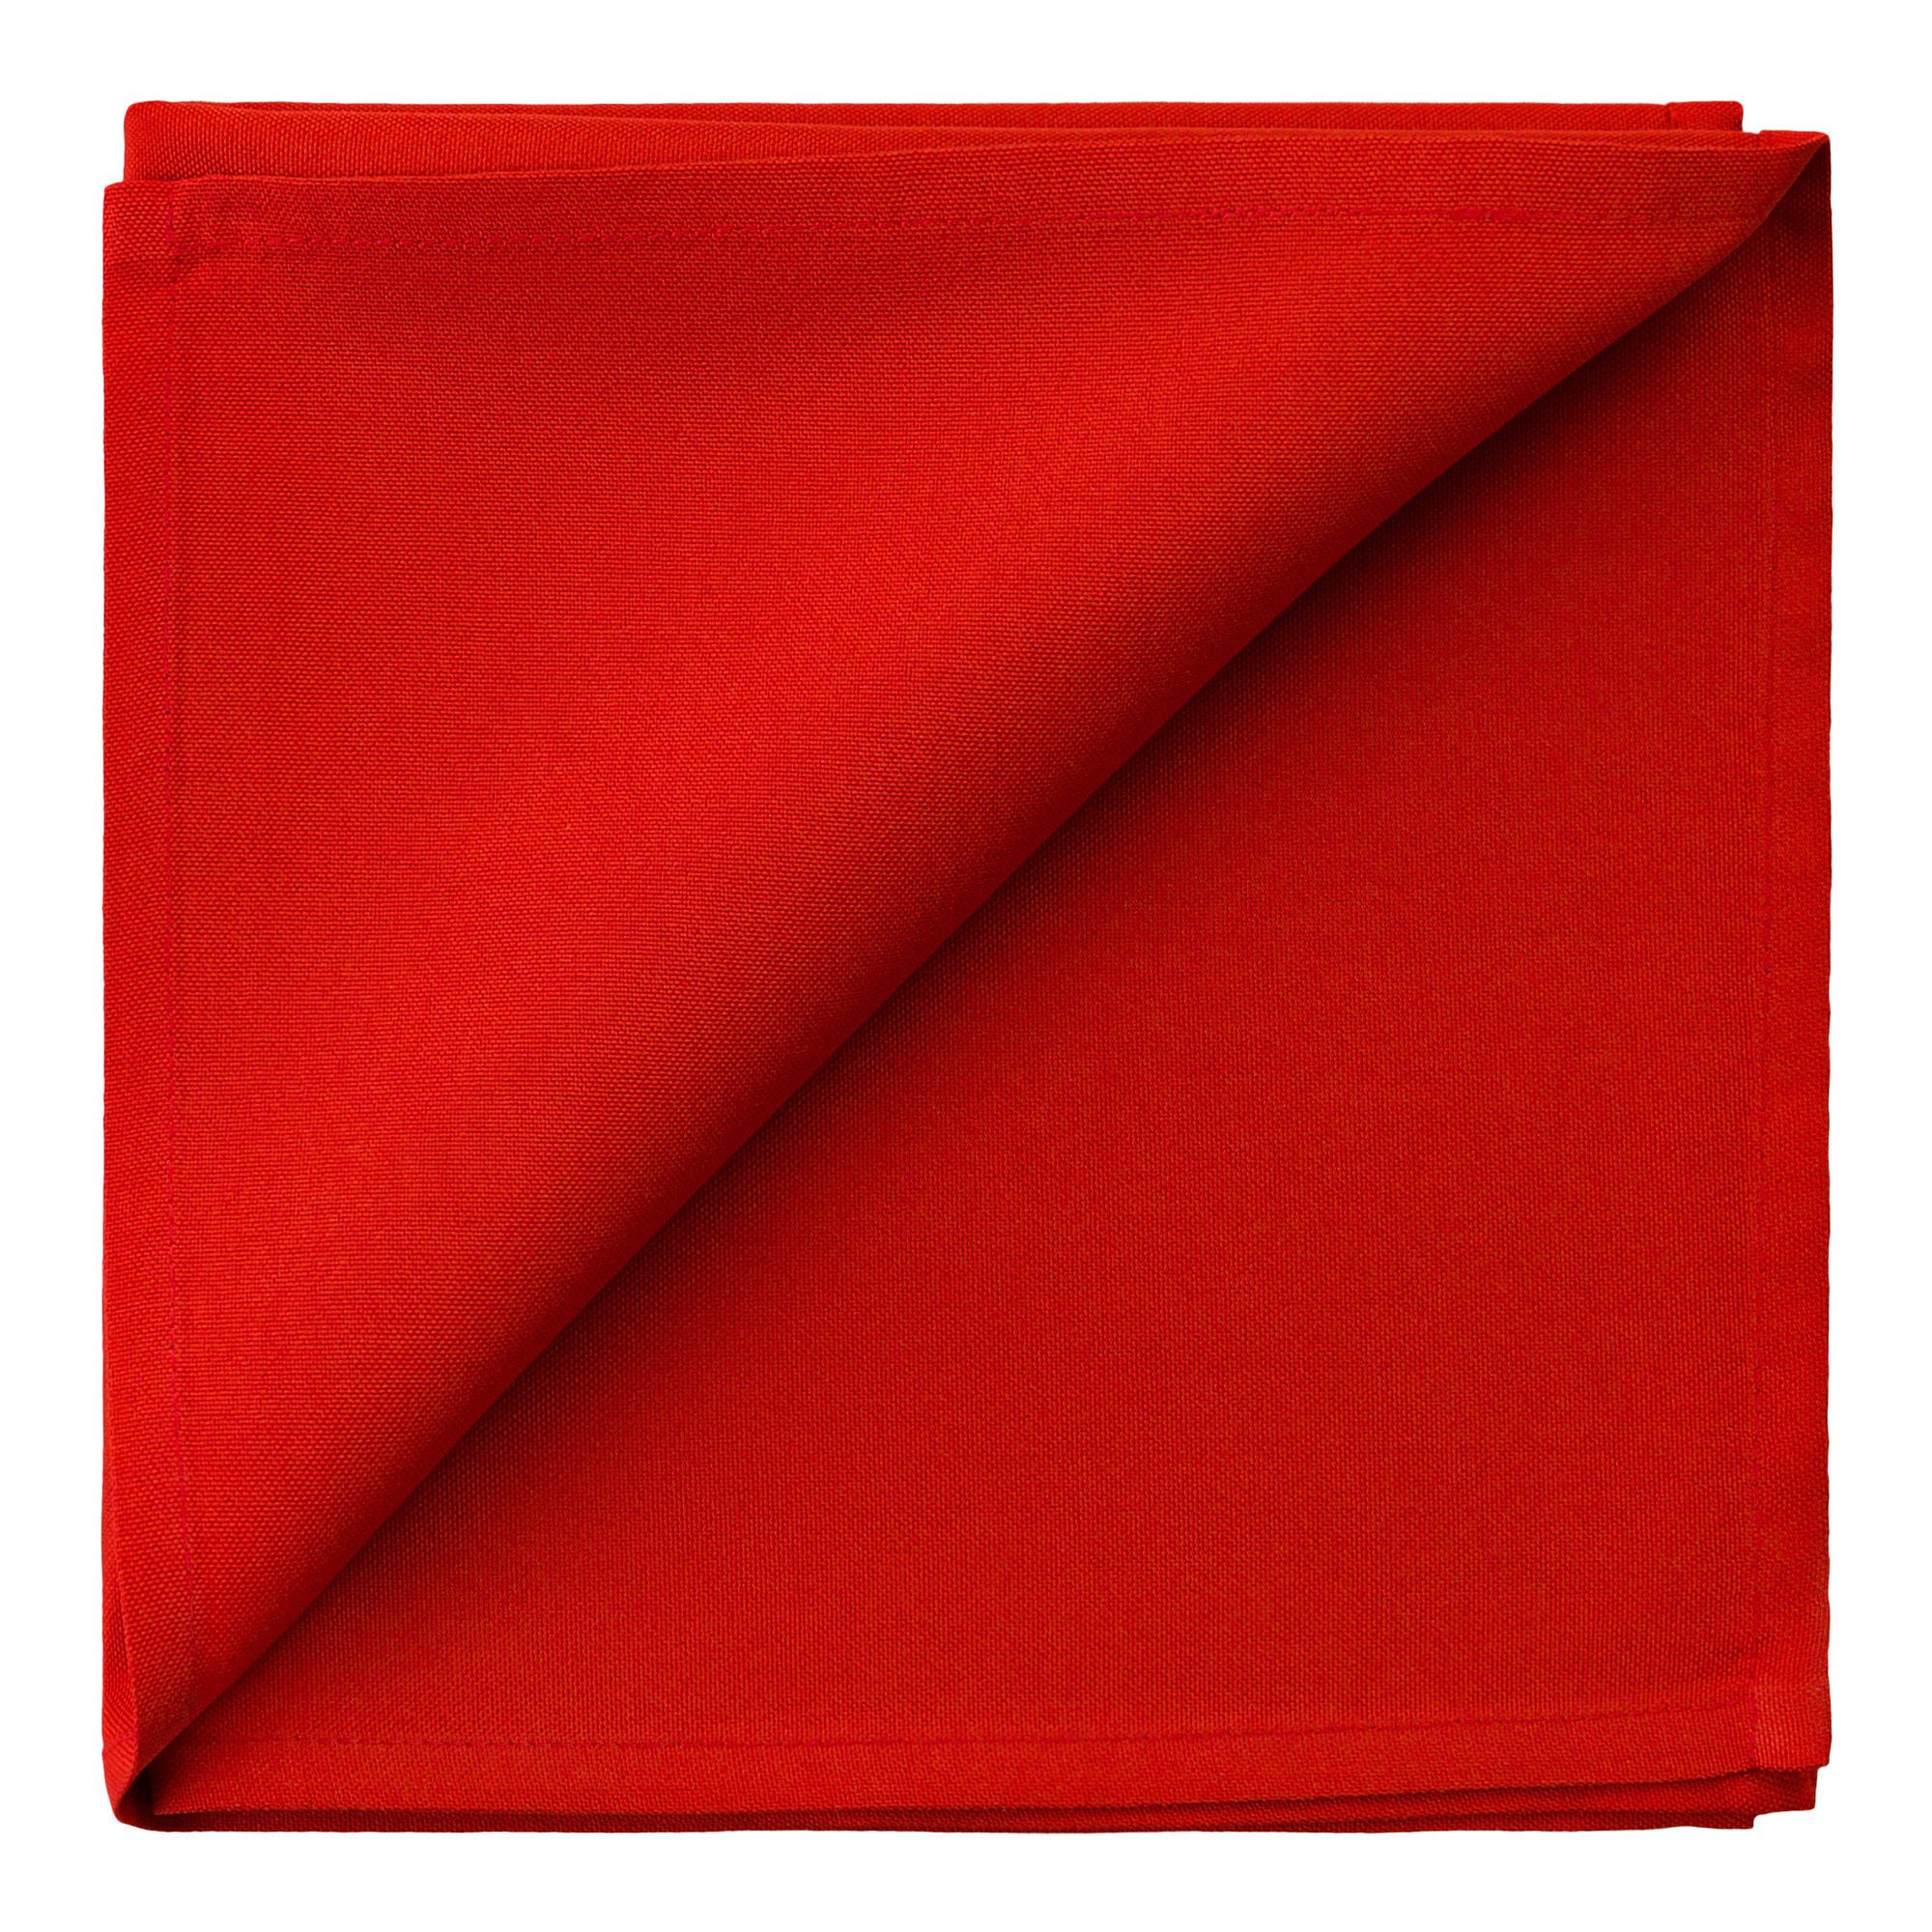 Красные салфетки купить. Красная салфетка. Красная тканевая салфетка. Красная тряпка. Сервировка с красными салфетками.